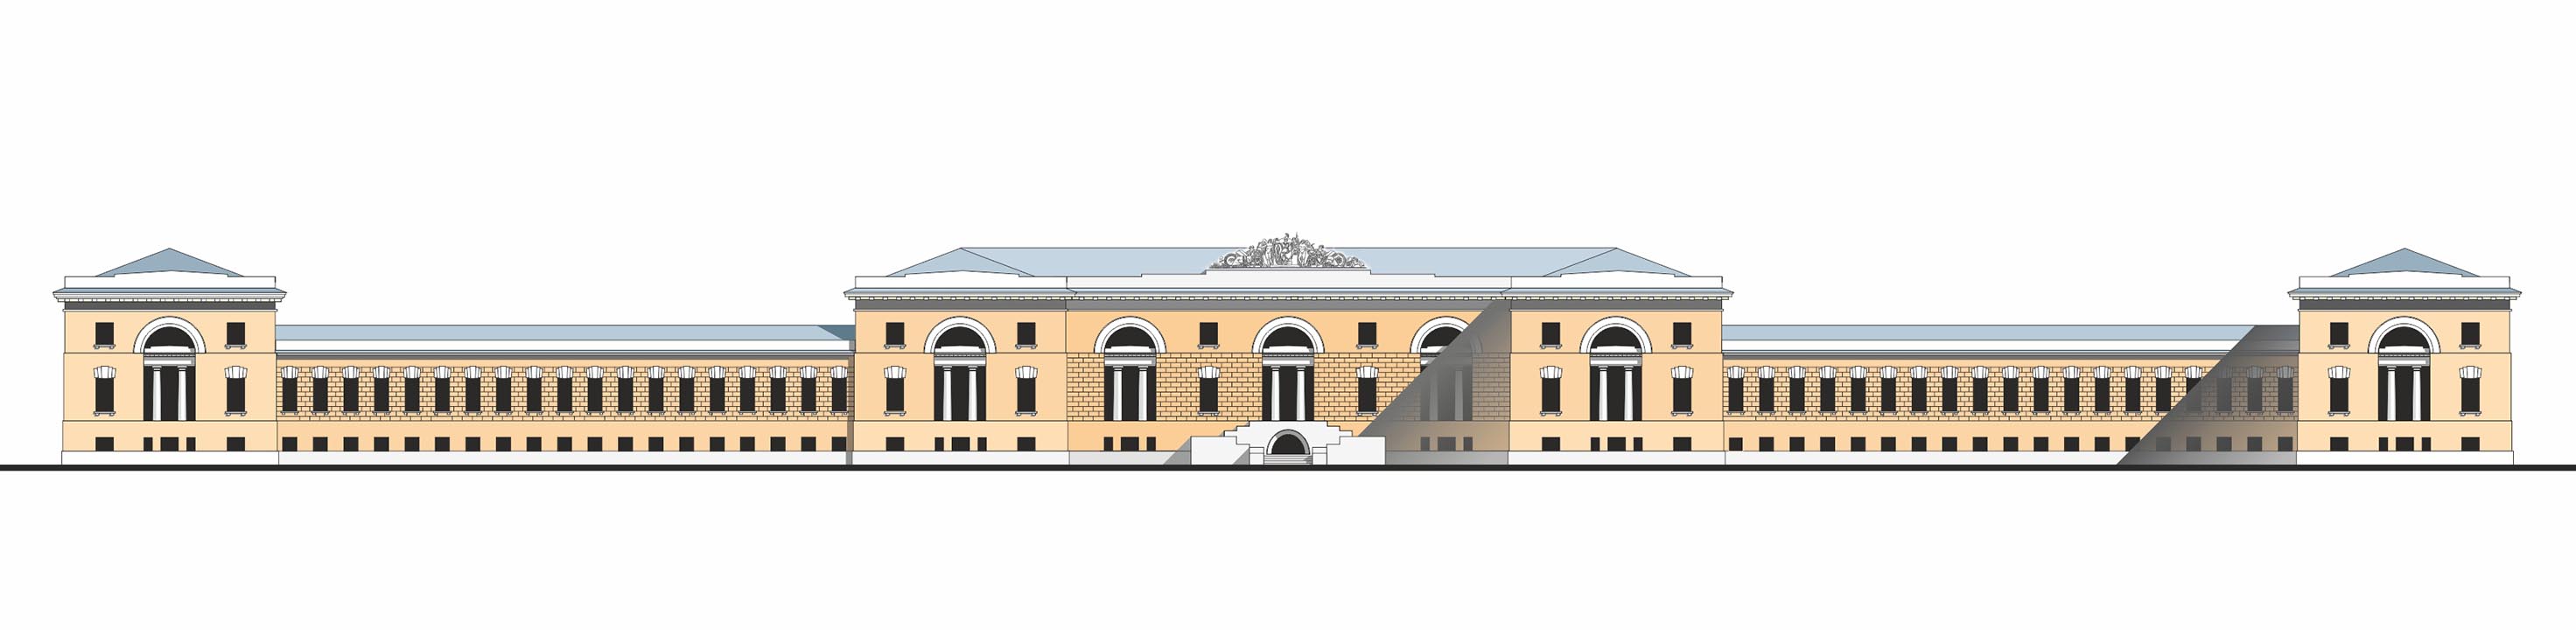 Фасад МРУЗ, реконструкция на 1830 г.